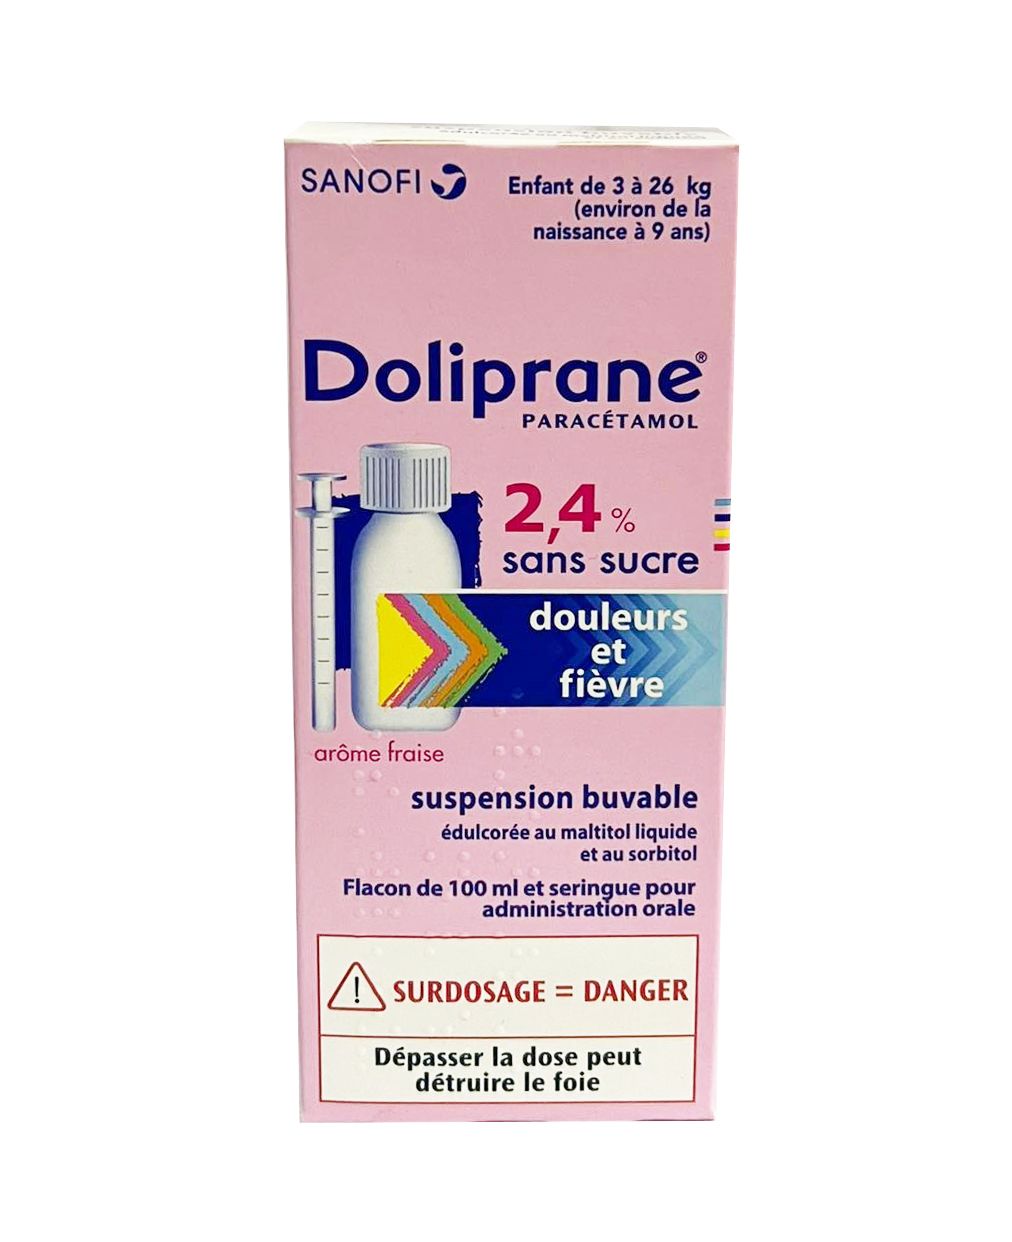 Doliprane sirop sans sucre, Paracetamol 2.4%, Flacon de 100ml, Douleurs et  Fievre de l'enfant de 3 à 26 kg - Sanofi Aventis